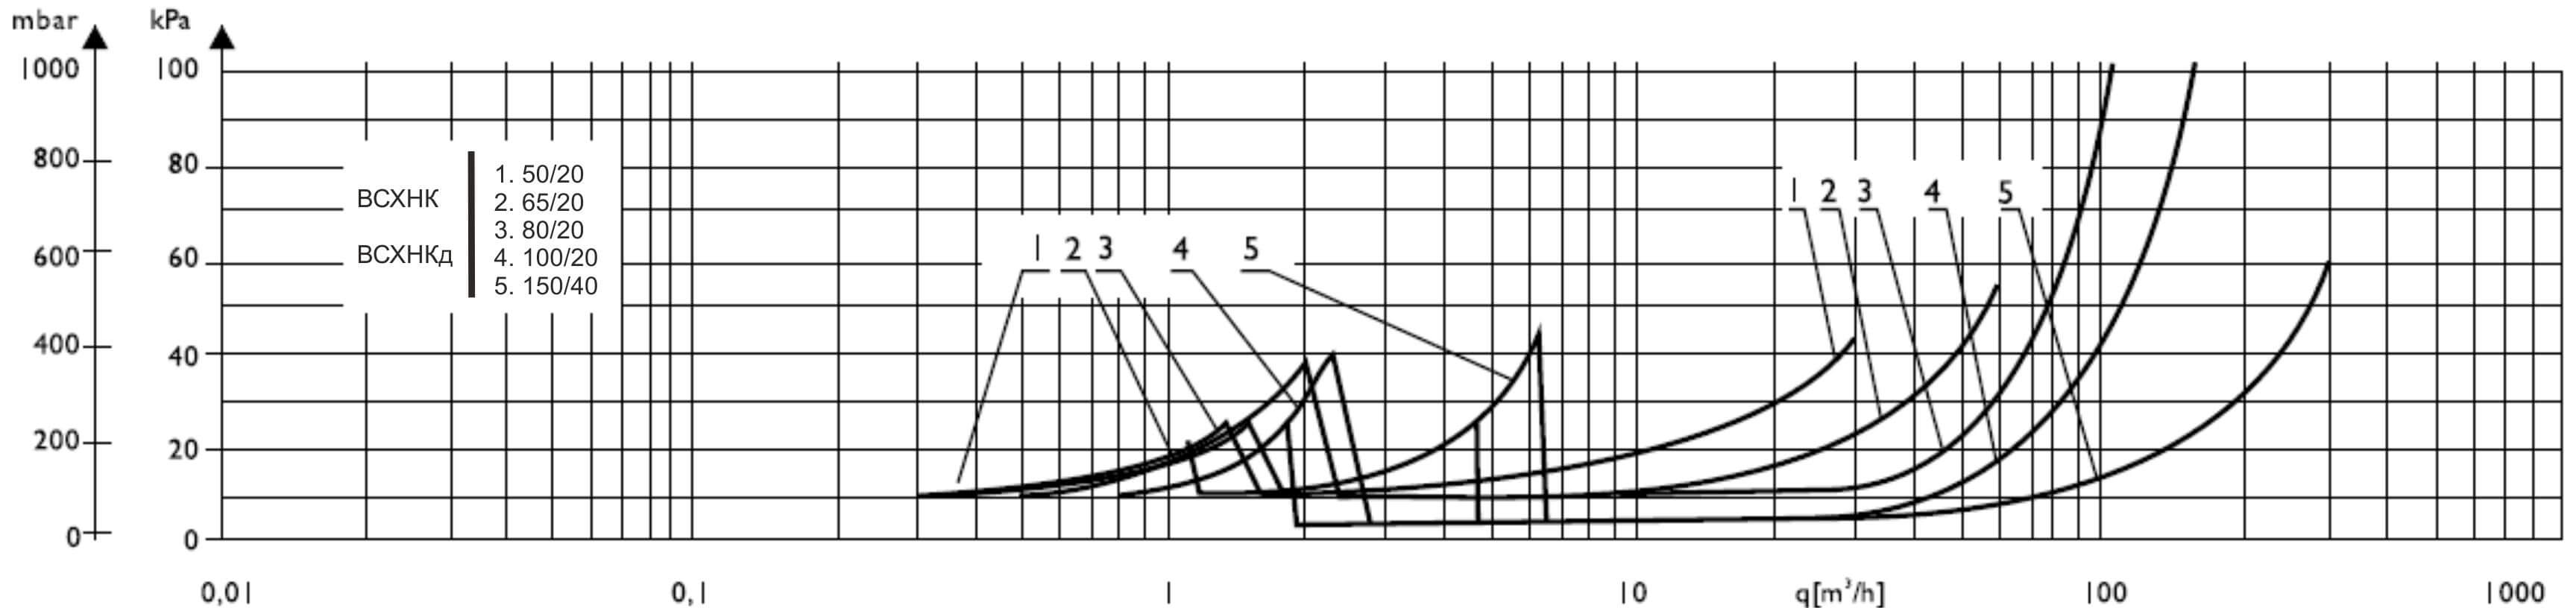 graf combik